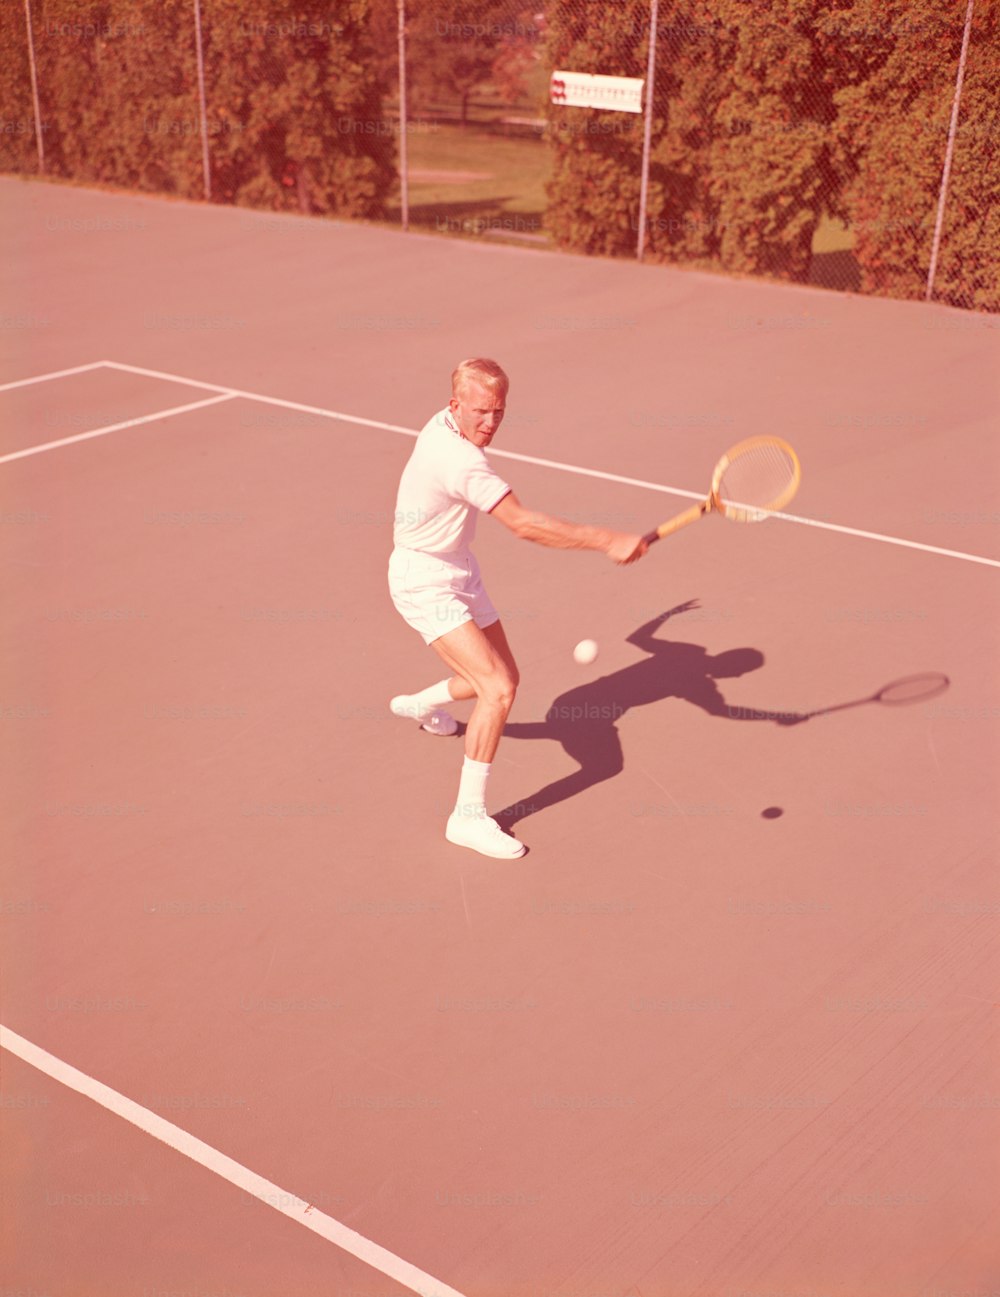 ESTADOS UNIDOS - Alrededor de la década de 1950: Hombre jugando al tenis.